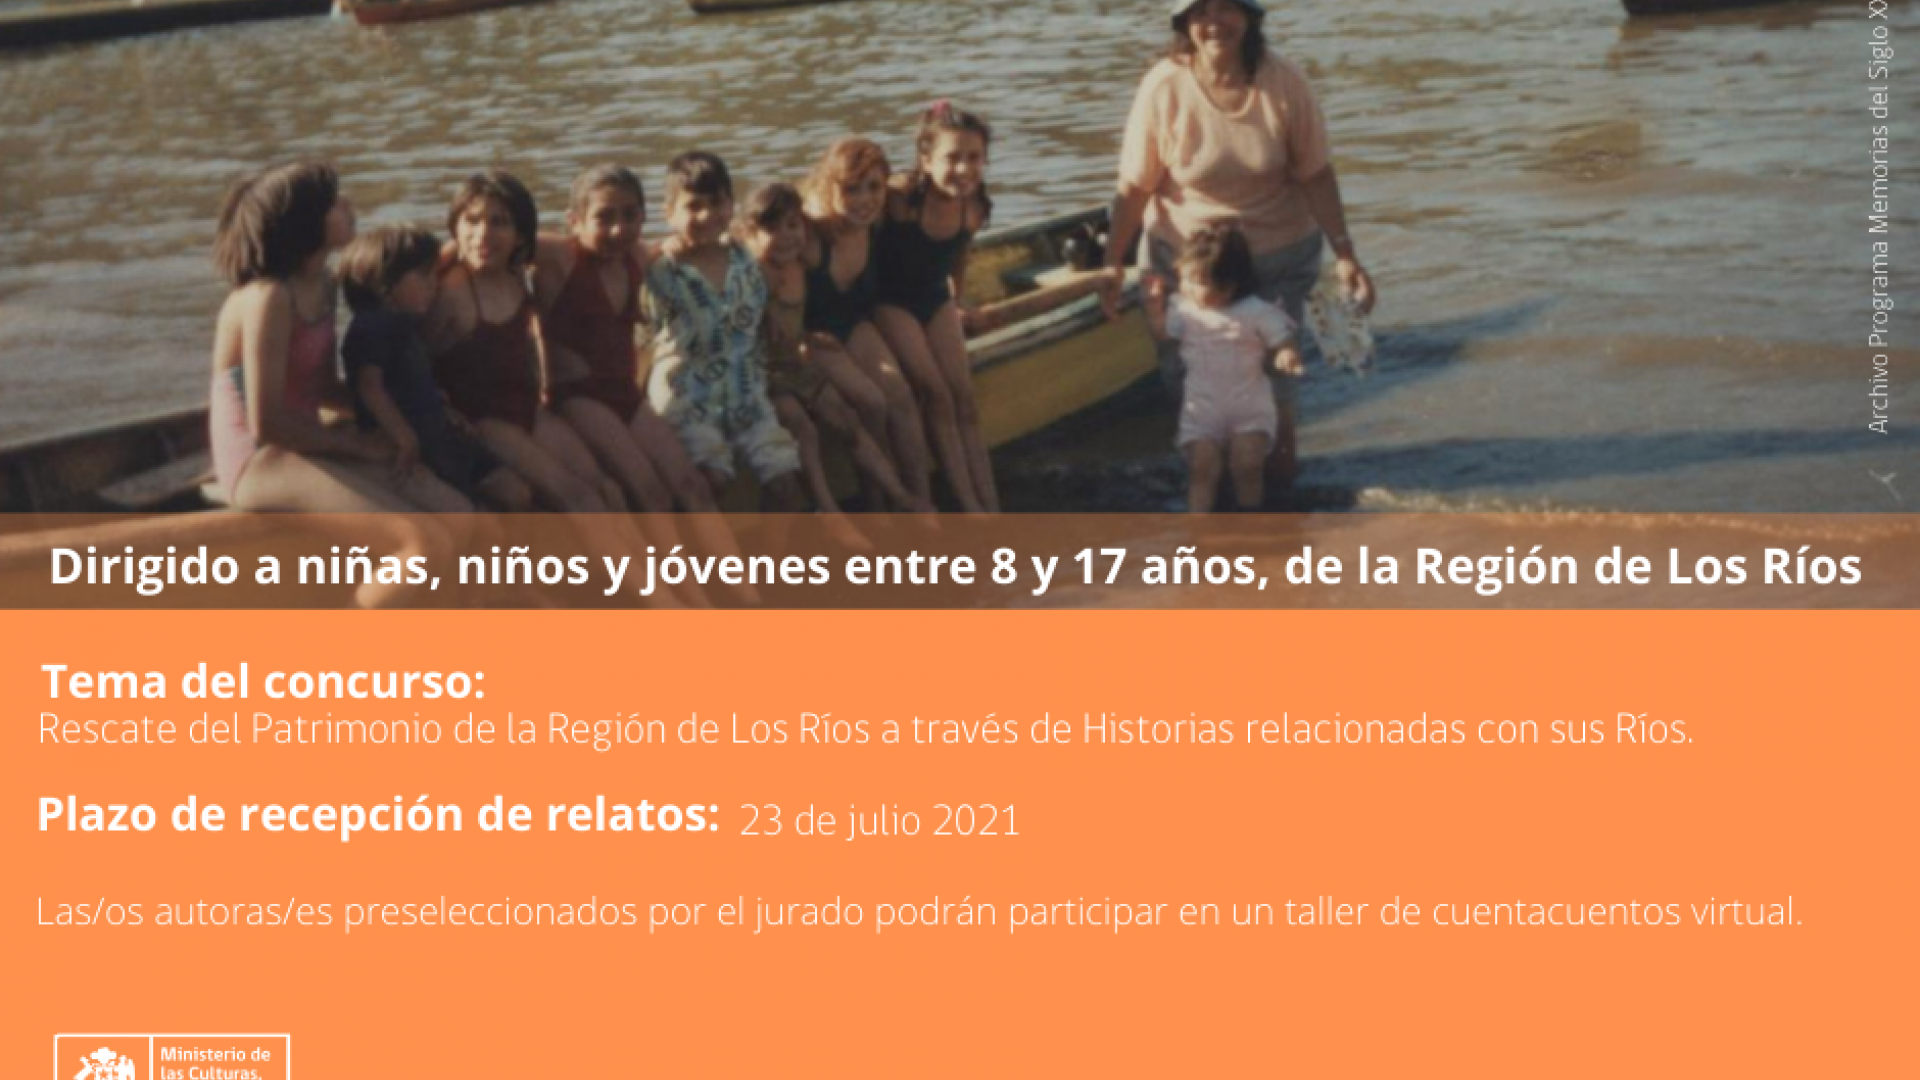 Imagen de Concurso de Relatos 2021 “Patrimonio Fluvial: Historias en Los Ríos”